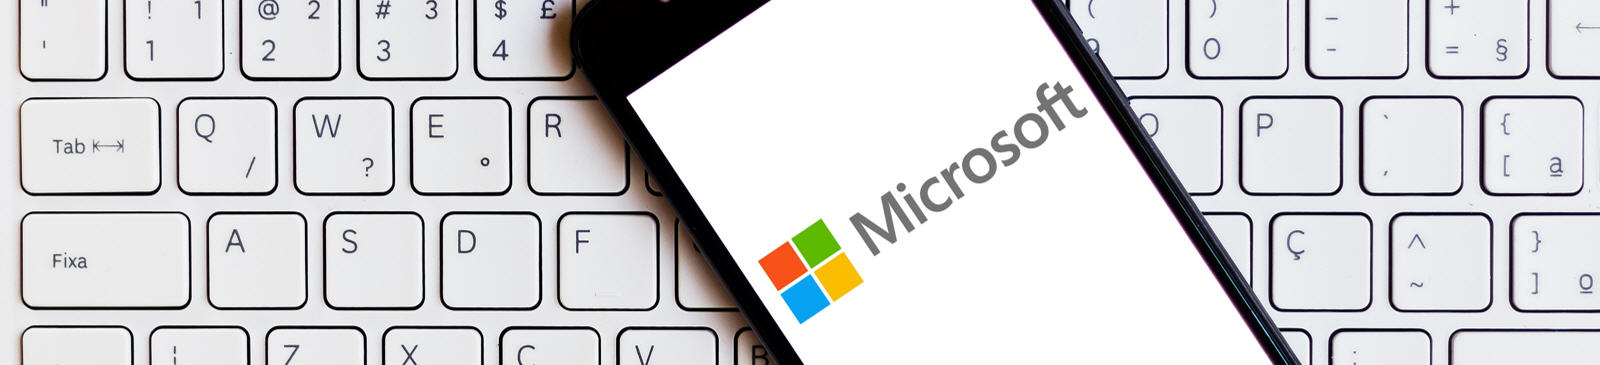 Les actualités qui pourraient affecter le cours de l'action Microsoft (action MSFT).